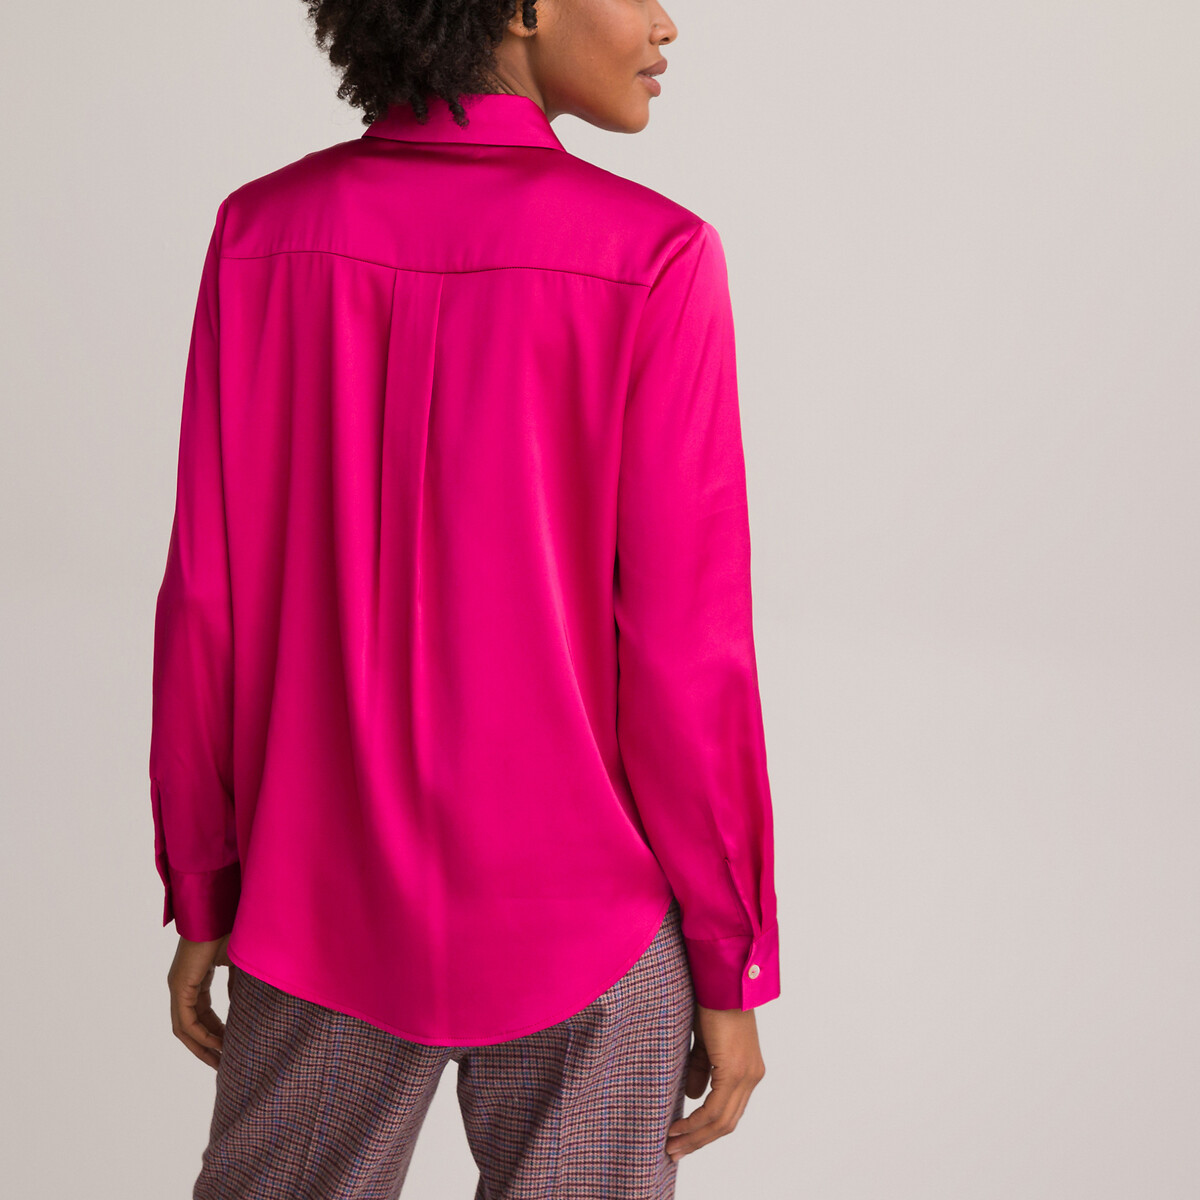 Рубашка С длинными рукавами атласная 48 (FR) - 54 (RUS) розовый LaRedoute, размер 48 (FR) - 54 (RUS) Рубашка С длинными рукавами атласная 48 (FR) - 54 (RUS) розовый - фото 4